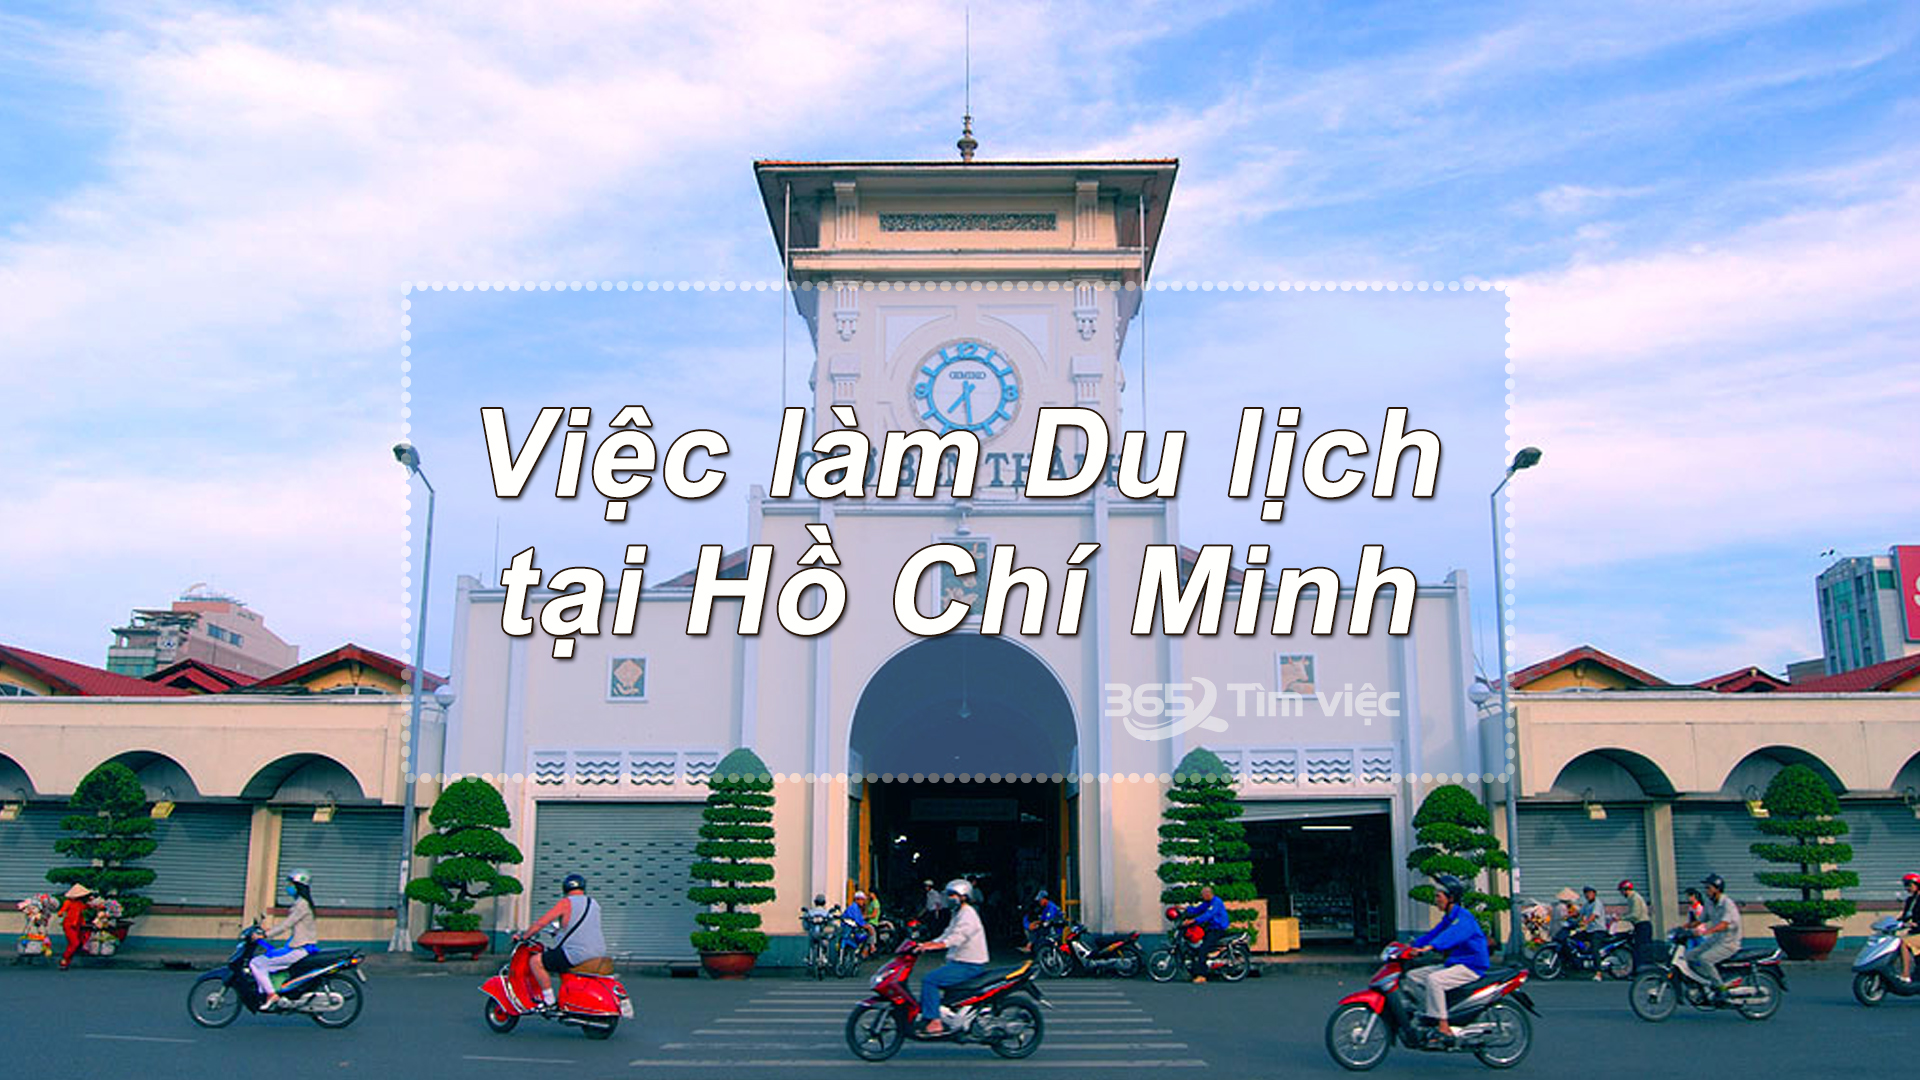 Mức lương cao cho việc làm du lịch tại Thành phố Hồ Chí Minh cao hơn 